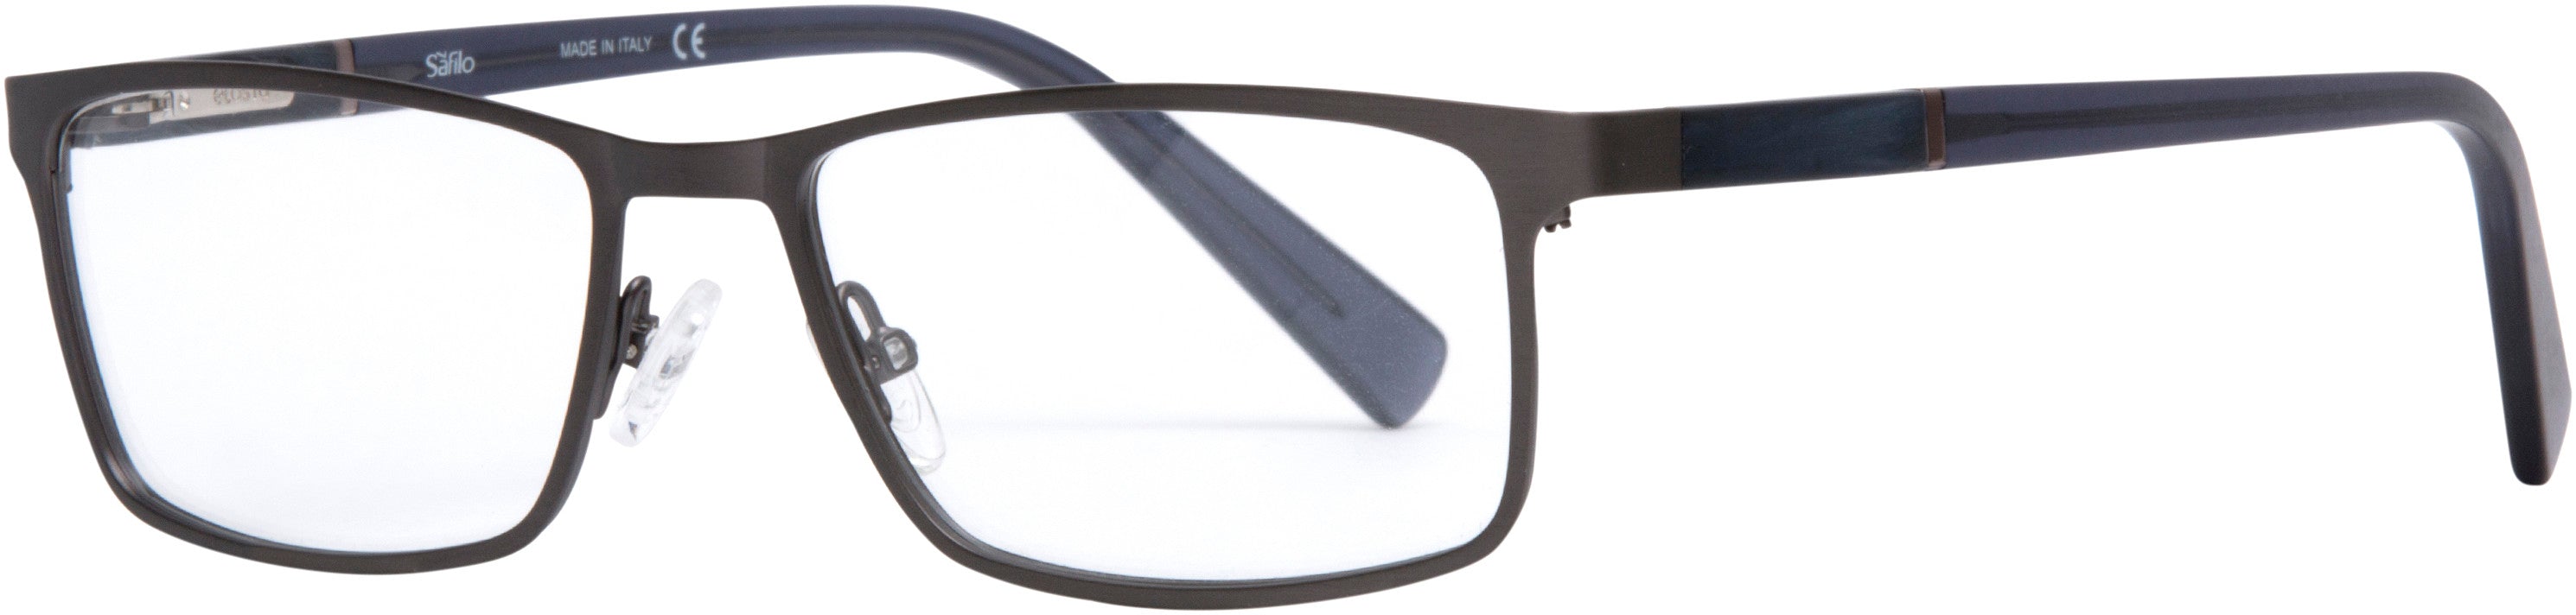  Elasta 7224 Rectangular Eyeglasses 0HWJ-0HWJ  Dark Gray (00 Demo Lens)